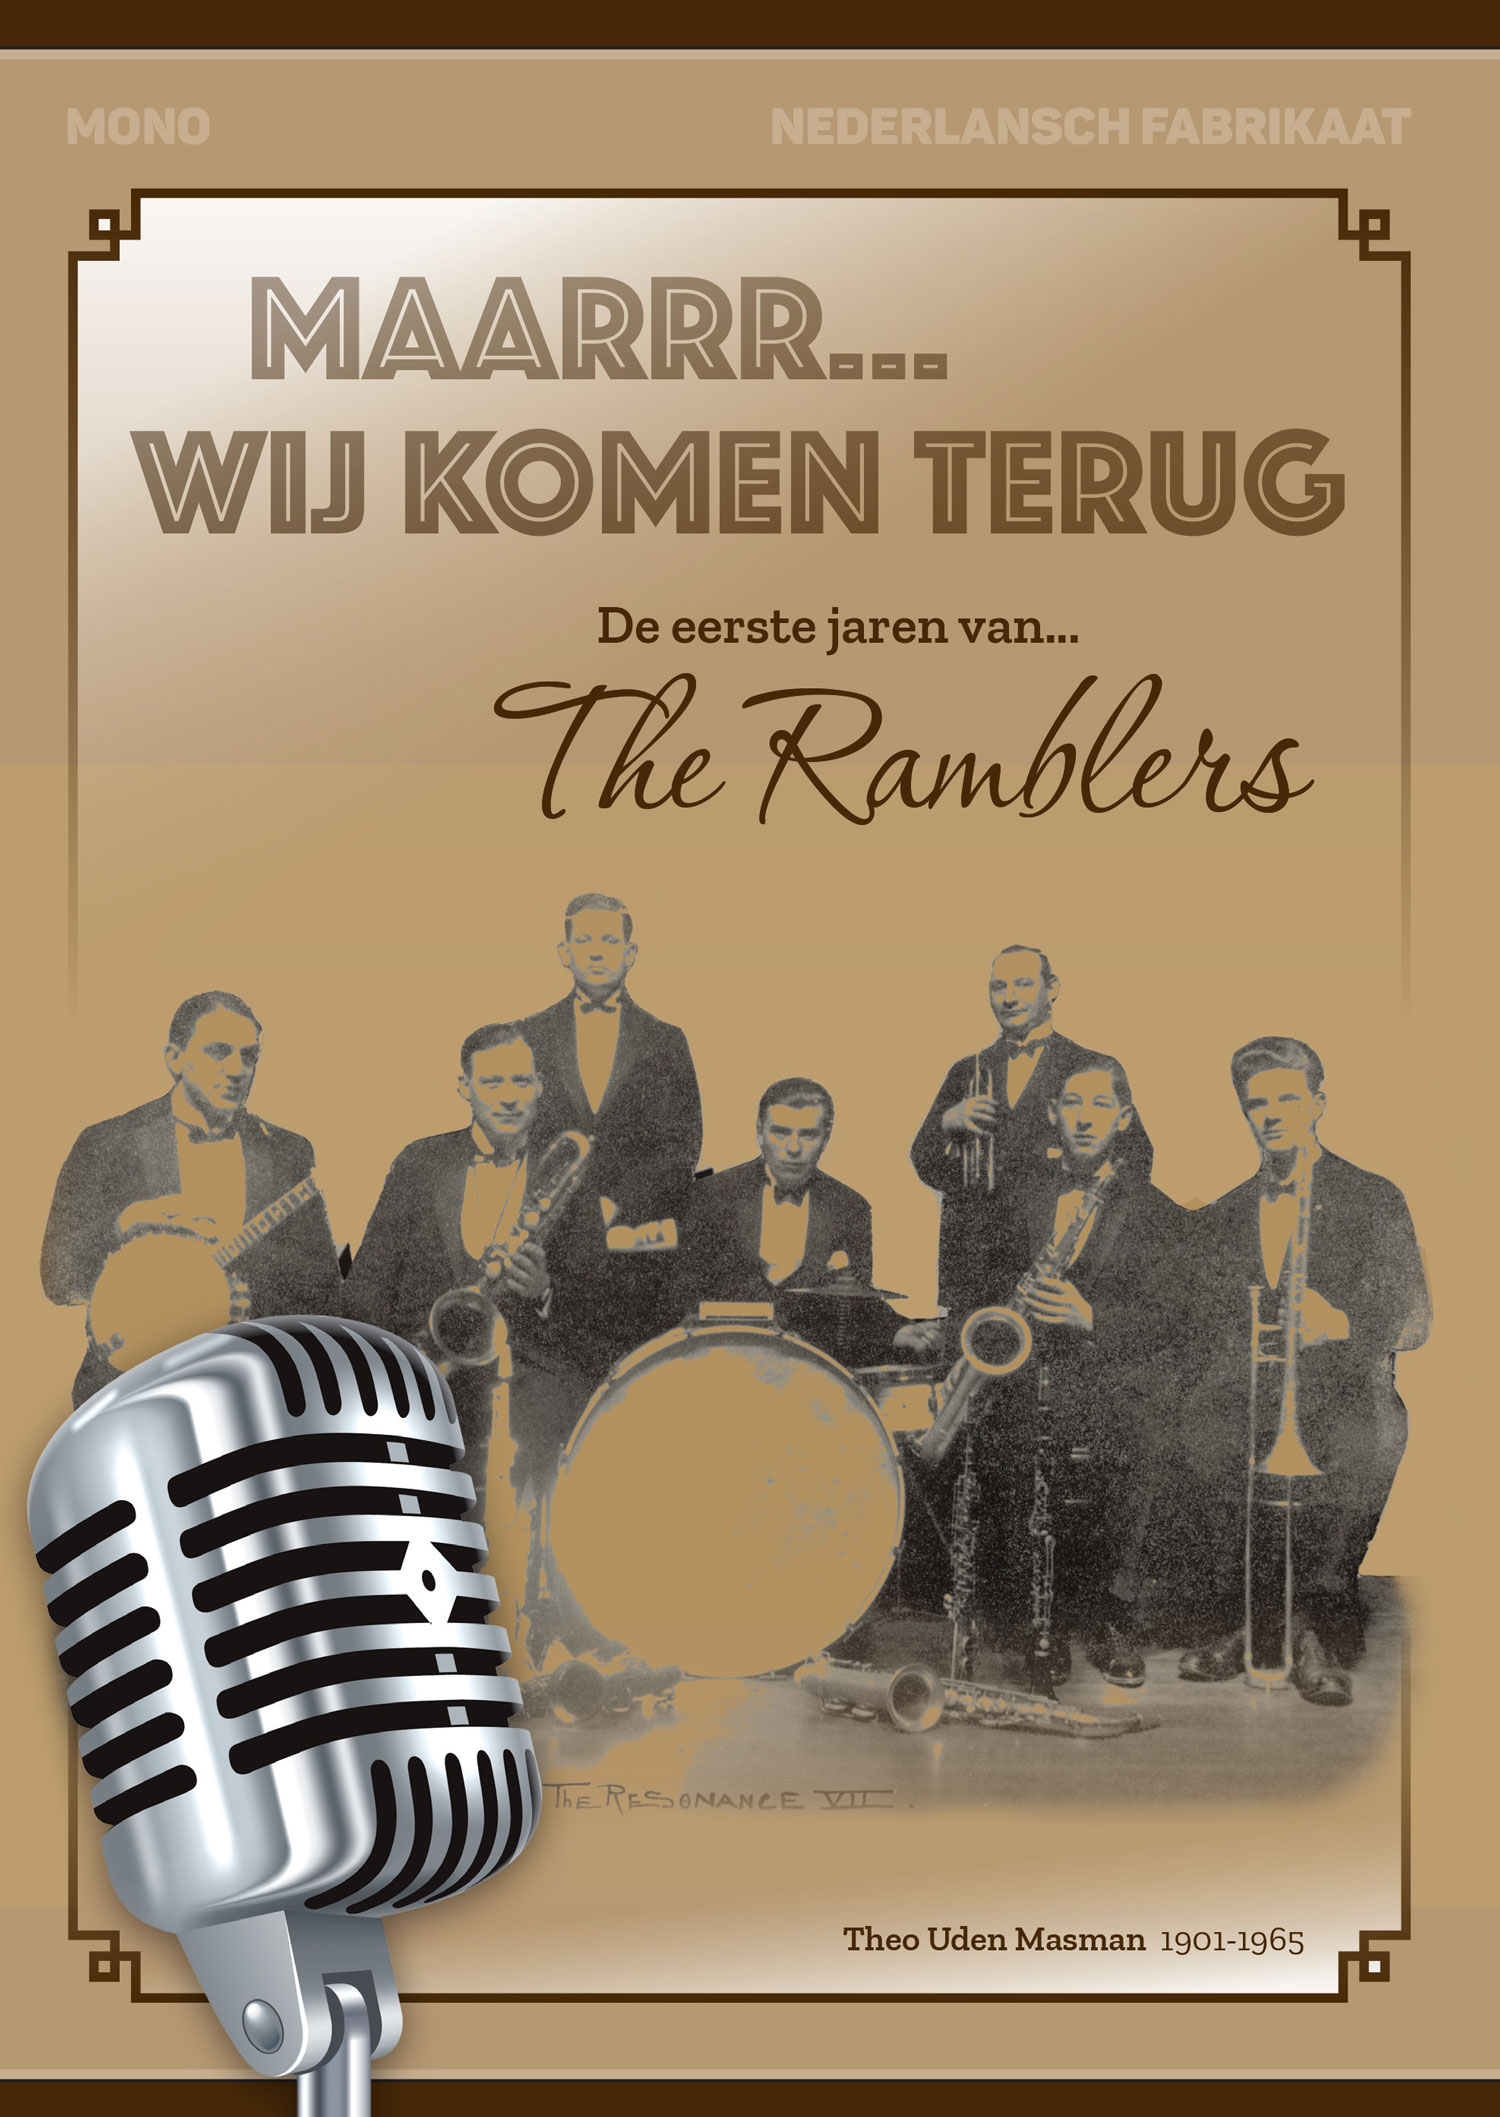 Boek over The Ramblers